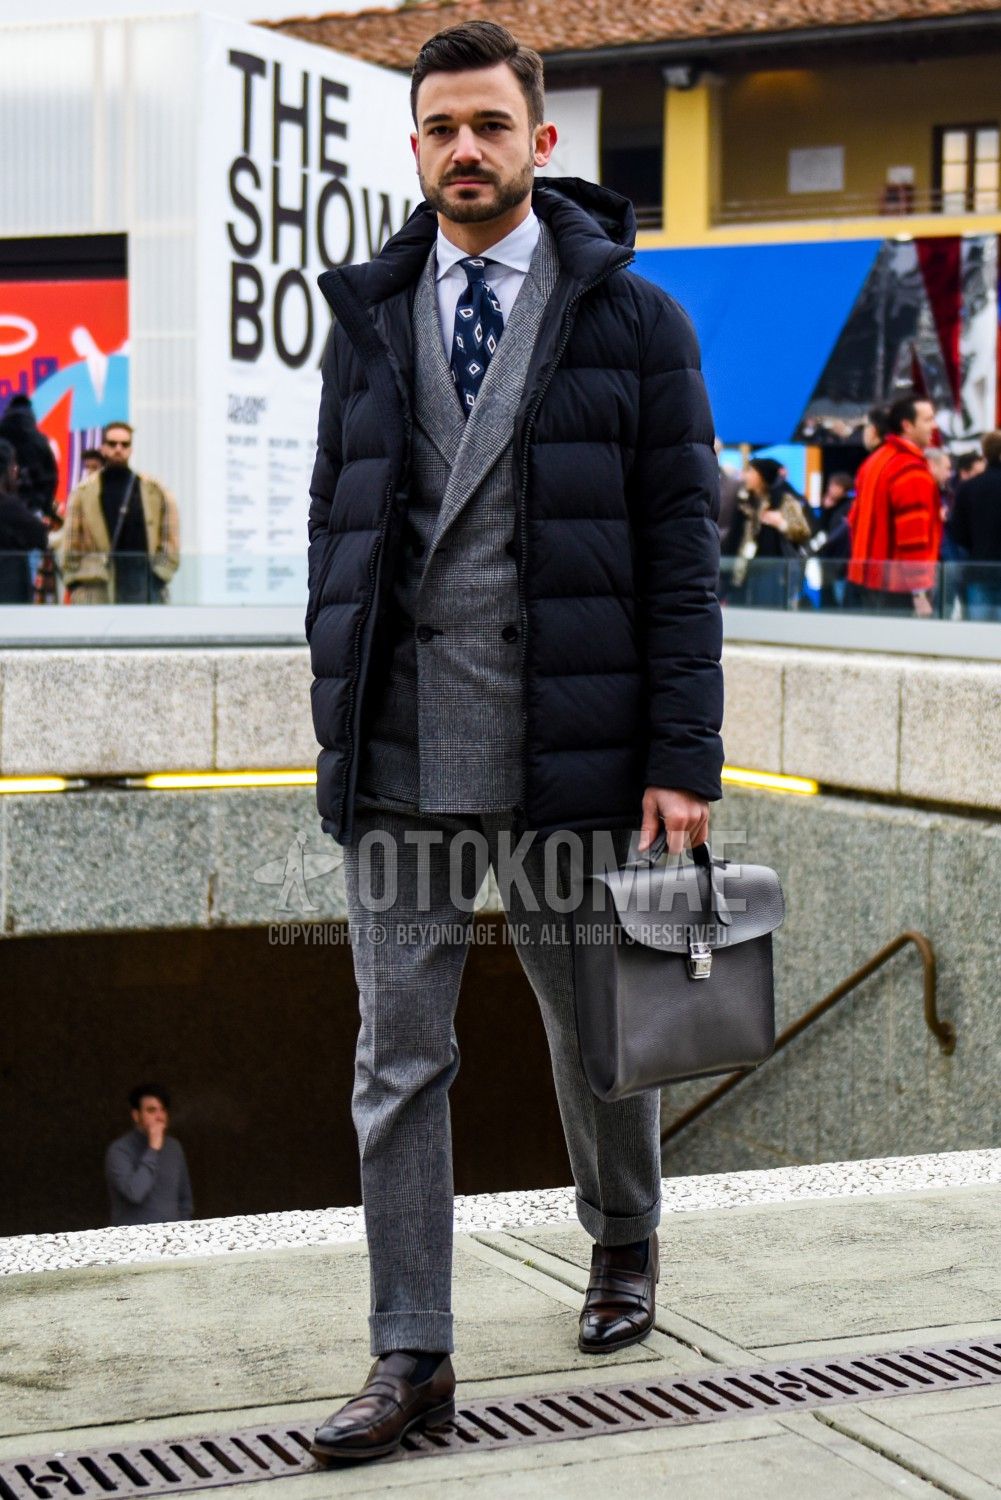 スーツに合うダウンジャケット選びで注目したい3のポイントとおすすめダウンを紹介 メンズファッションメディア Otokomae 男前研究所